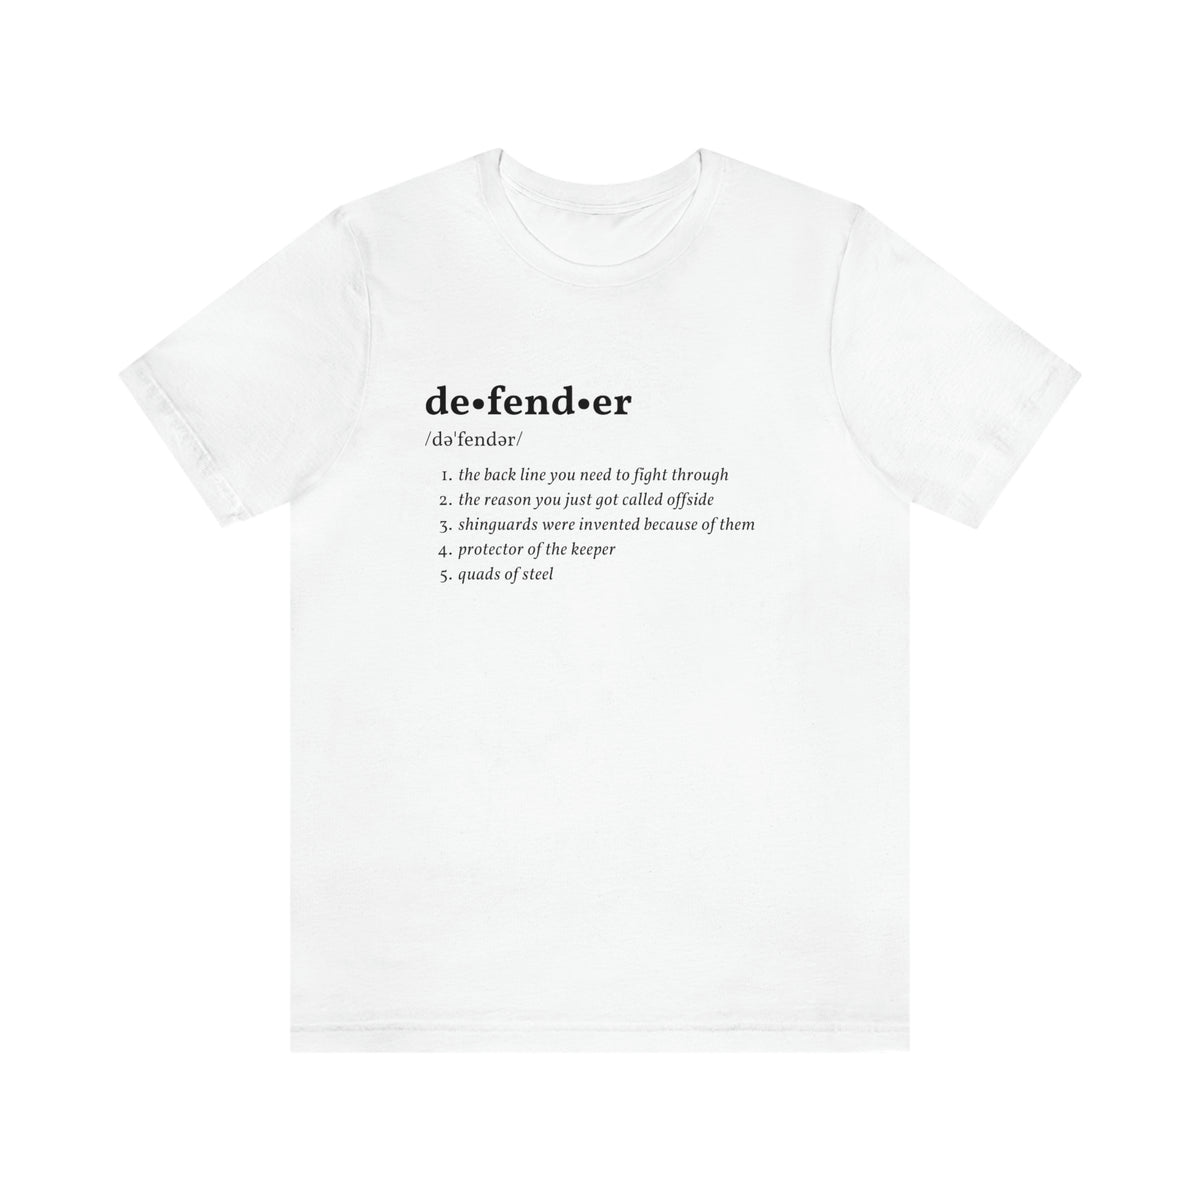 Defender Definition Adult T-Shirt